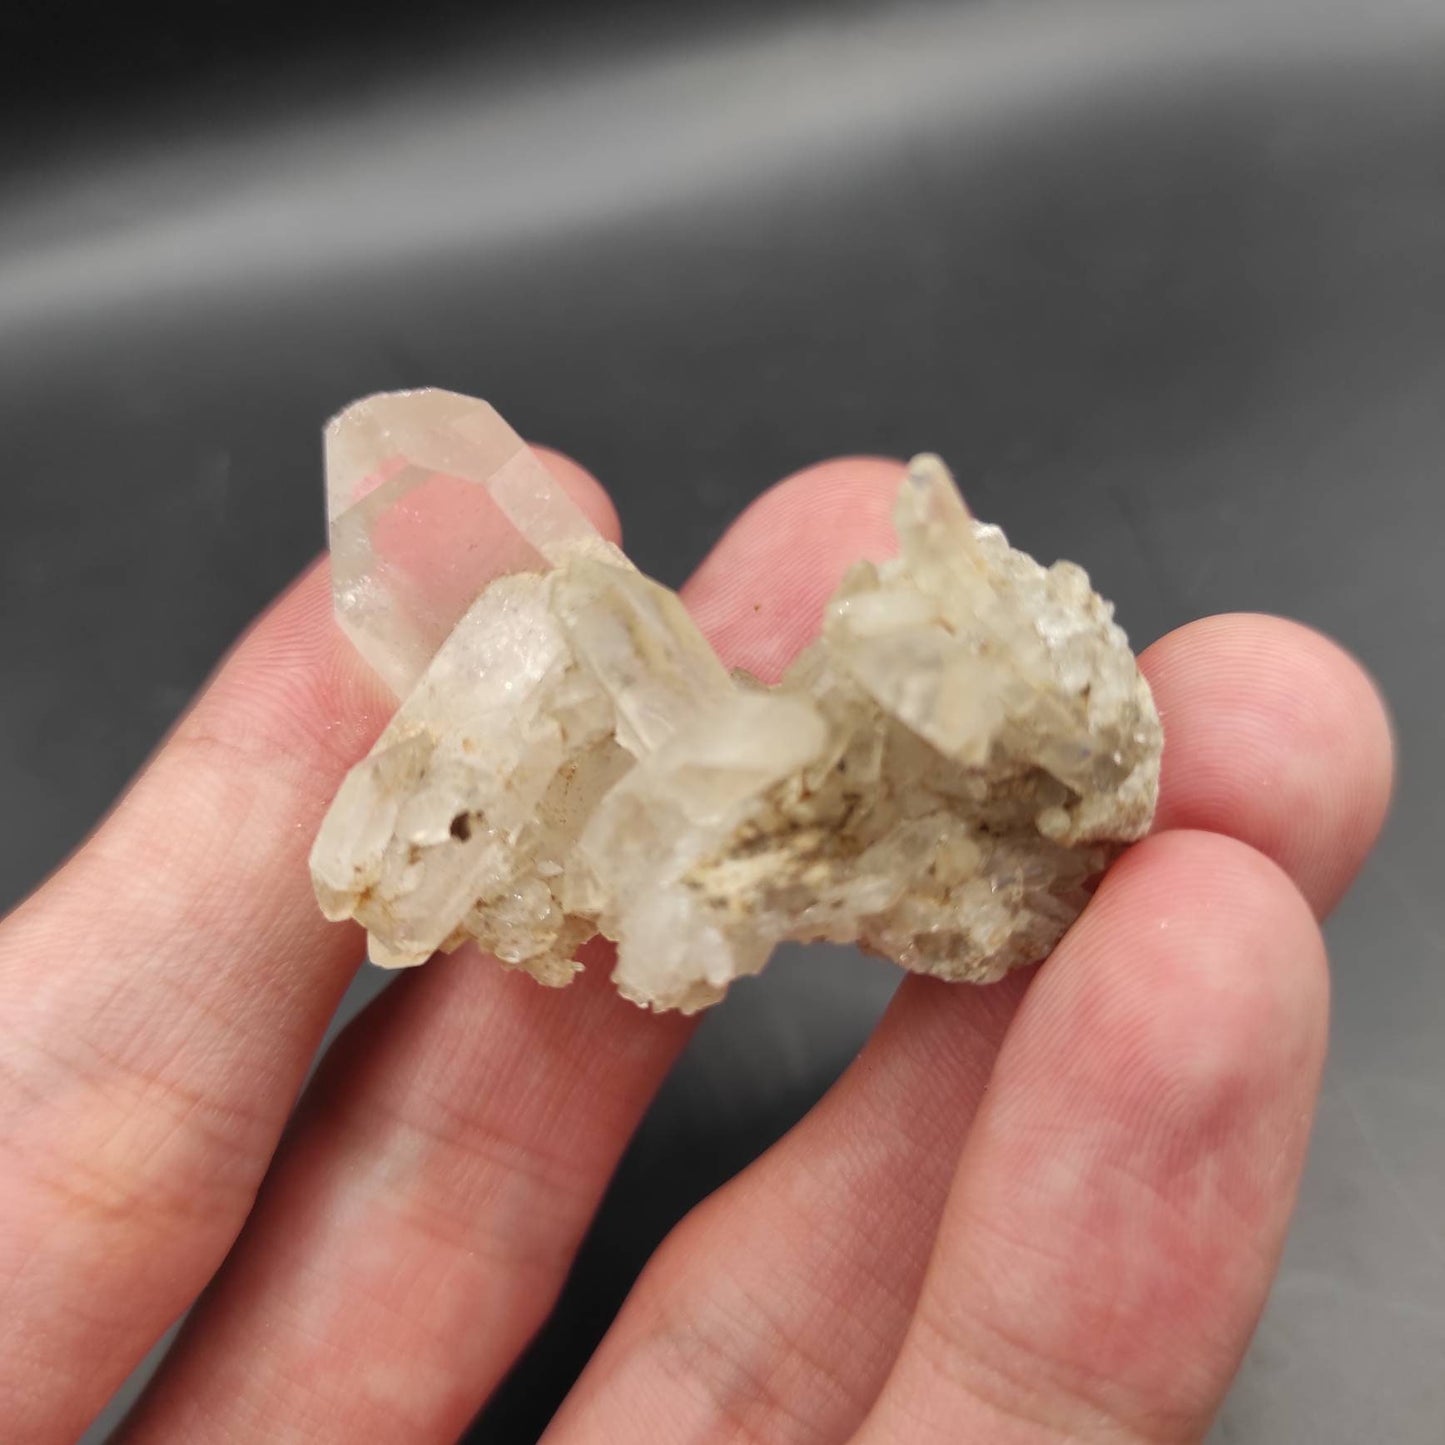 20g Clear Quartz Cluster - Natural Quartz Point Cluster - Quartz Specimen from Pakistan - Rough Quartz Crystal - Natural Crystal Point